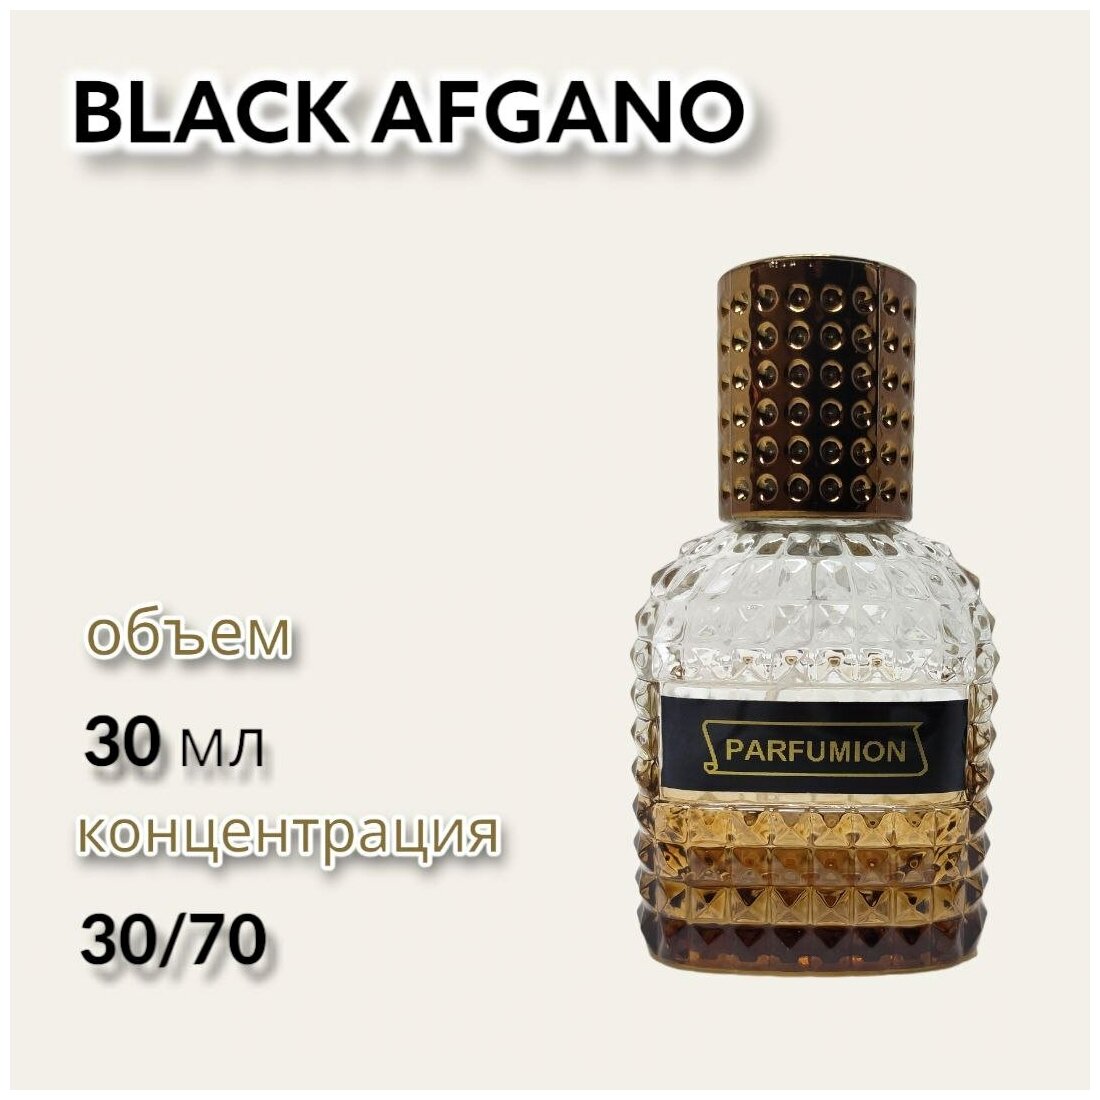 Духи "Black Afgano" от Parfumion